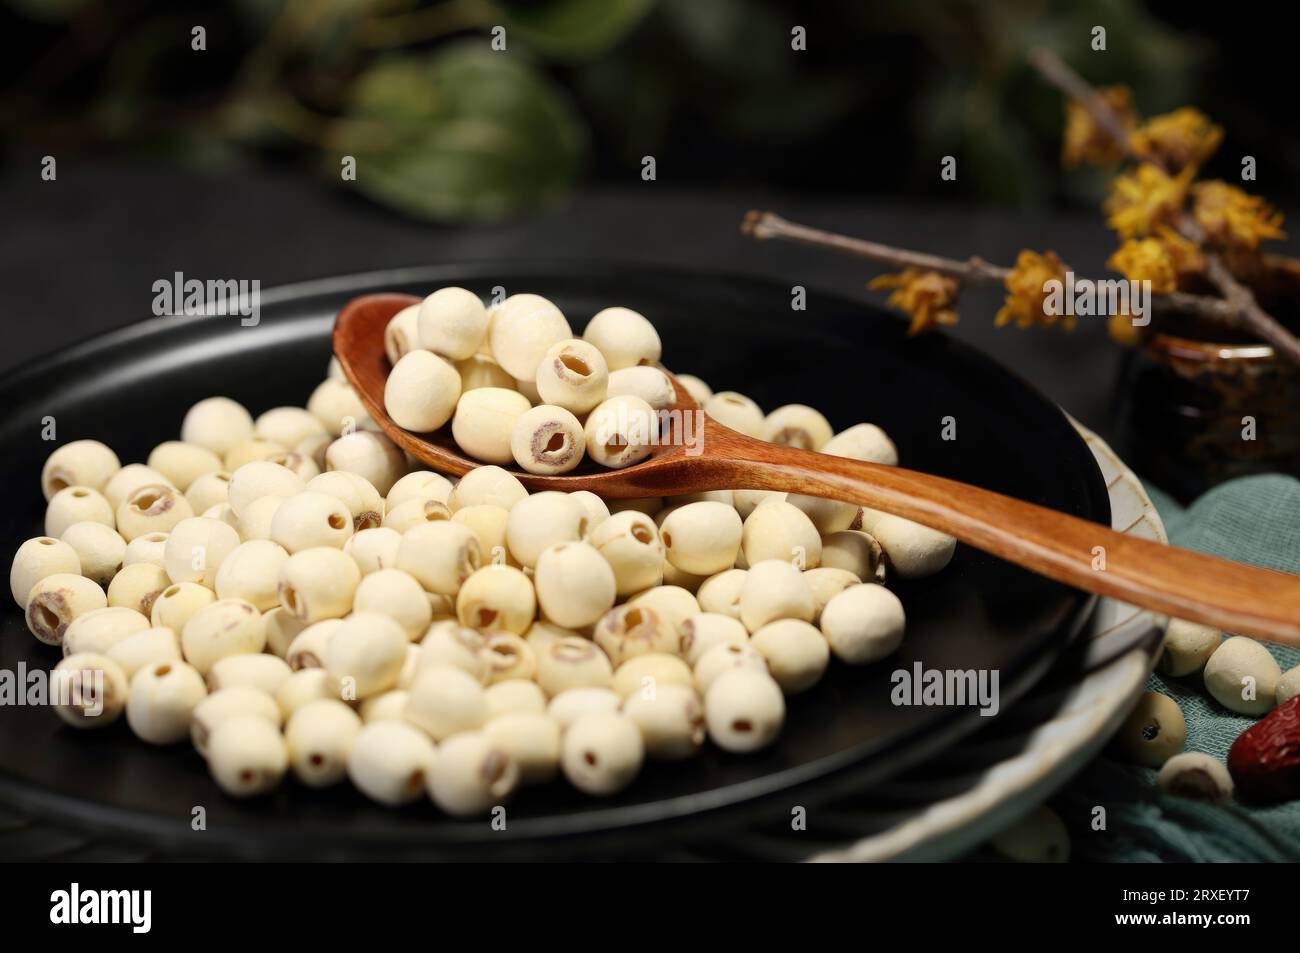 Bilder von Lotussamen mit hochauflösenden Fotos, nährstoffreichen, kalorienarmen und antioxidativen Eigenschaften Stockfoto